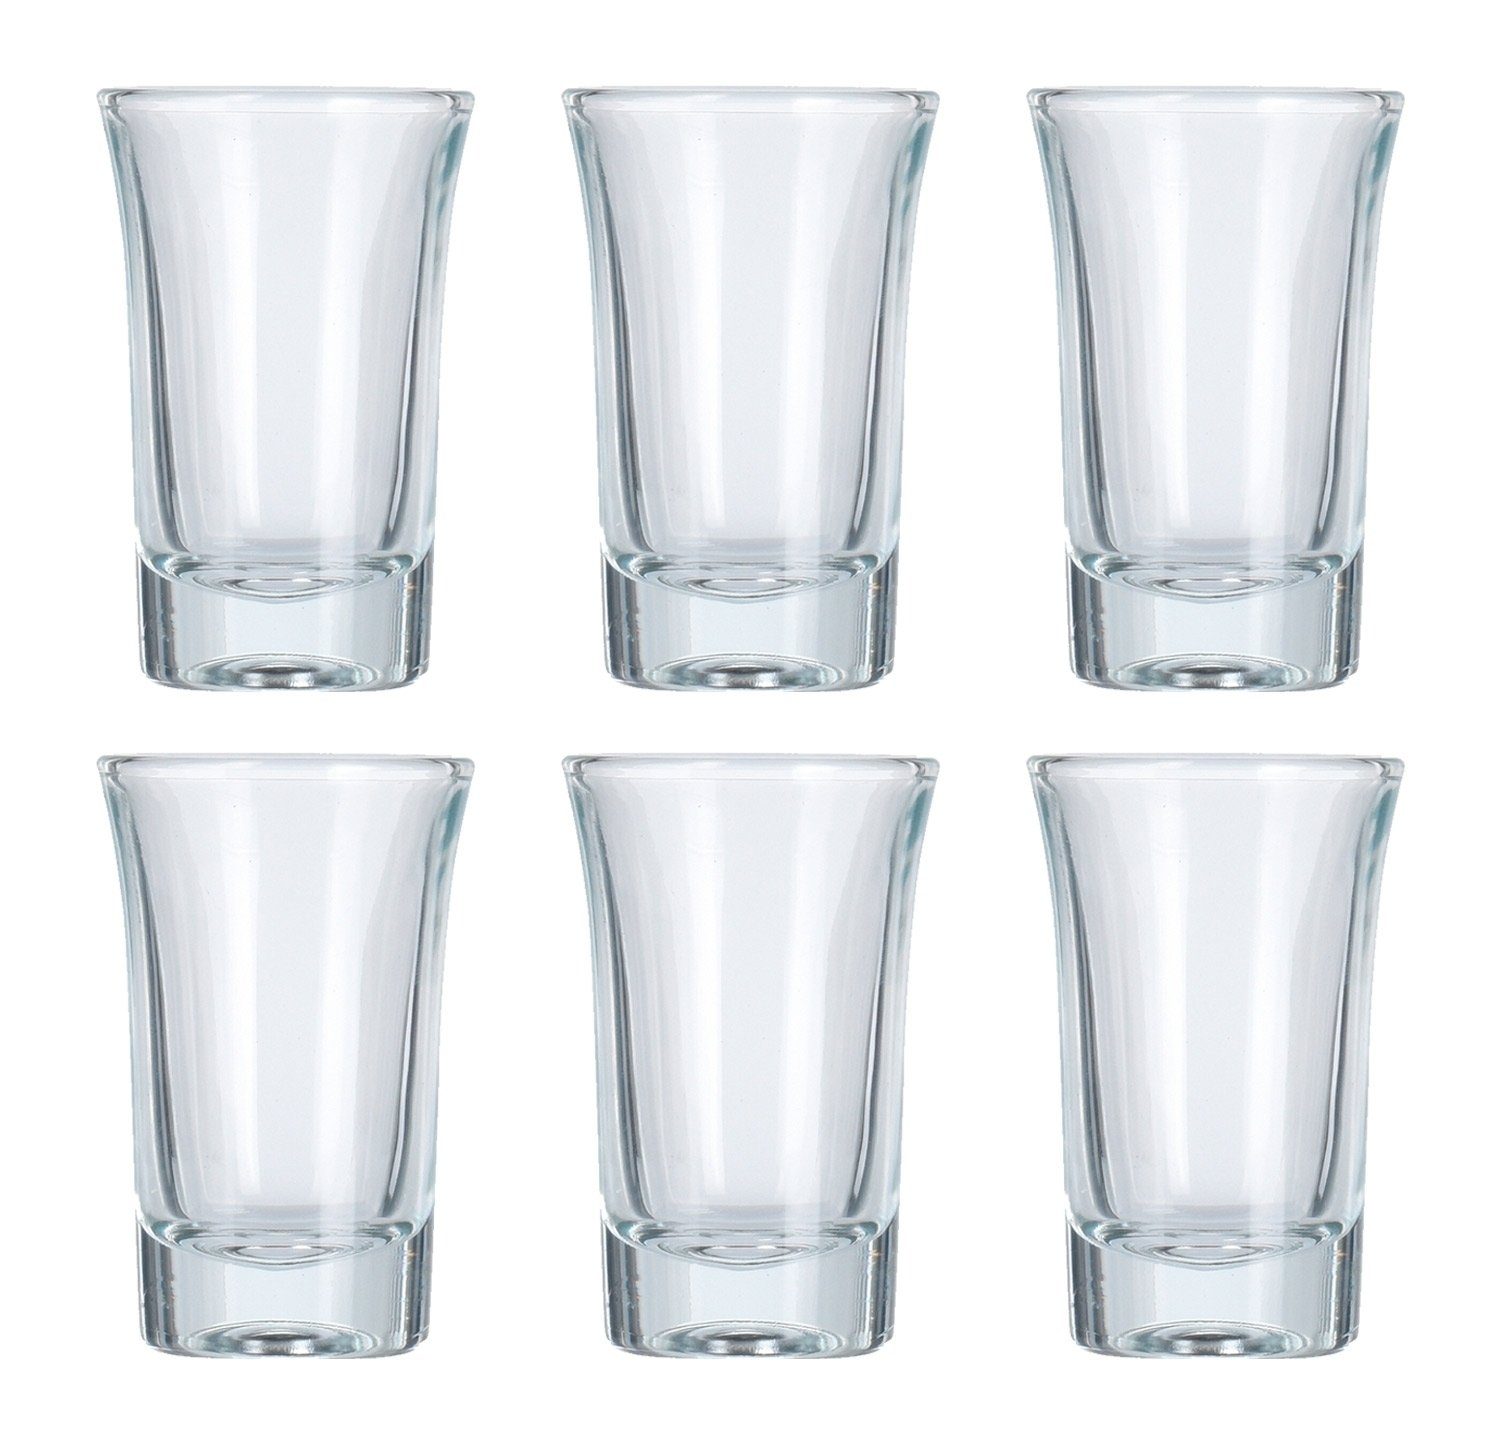 Gläser-Set Schnapsglas, 6er Set, 40 ml Fassungsvermögen, Glas, Spülmaschinengeeignet